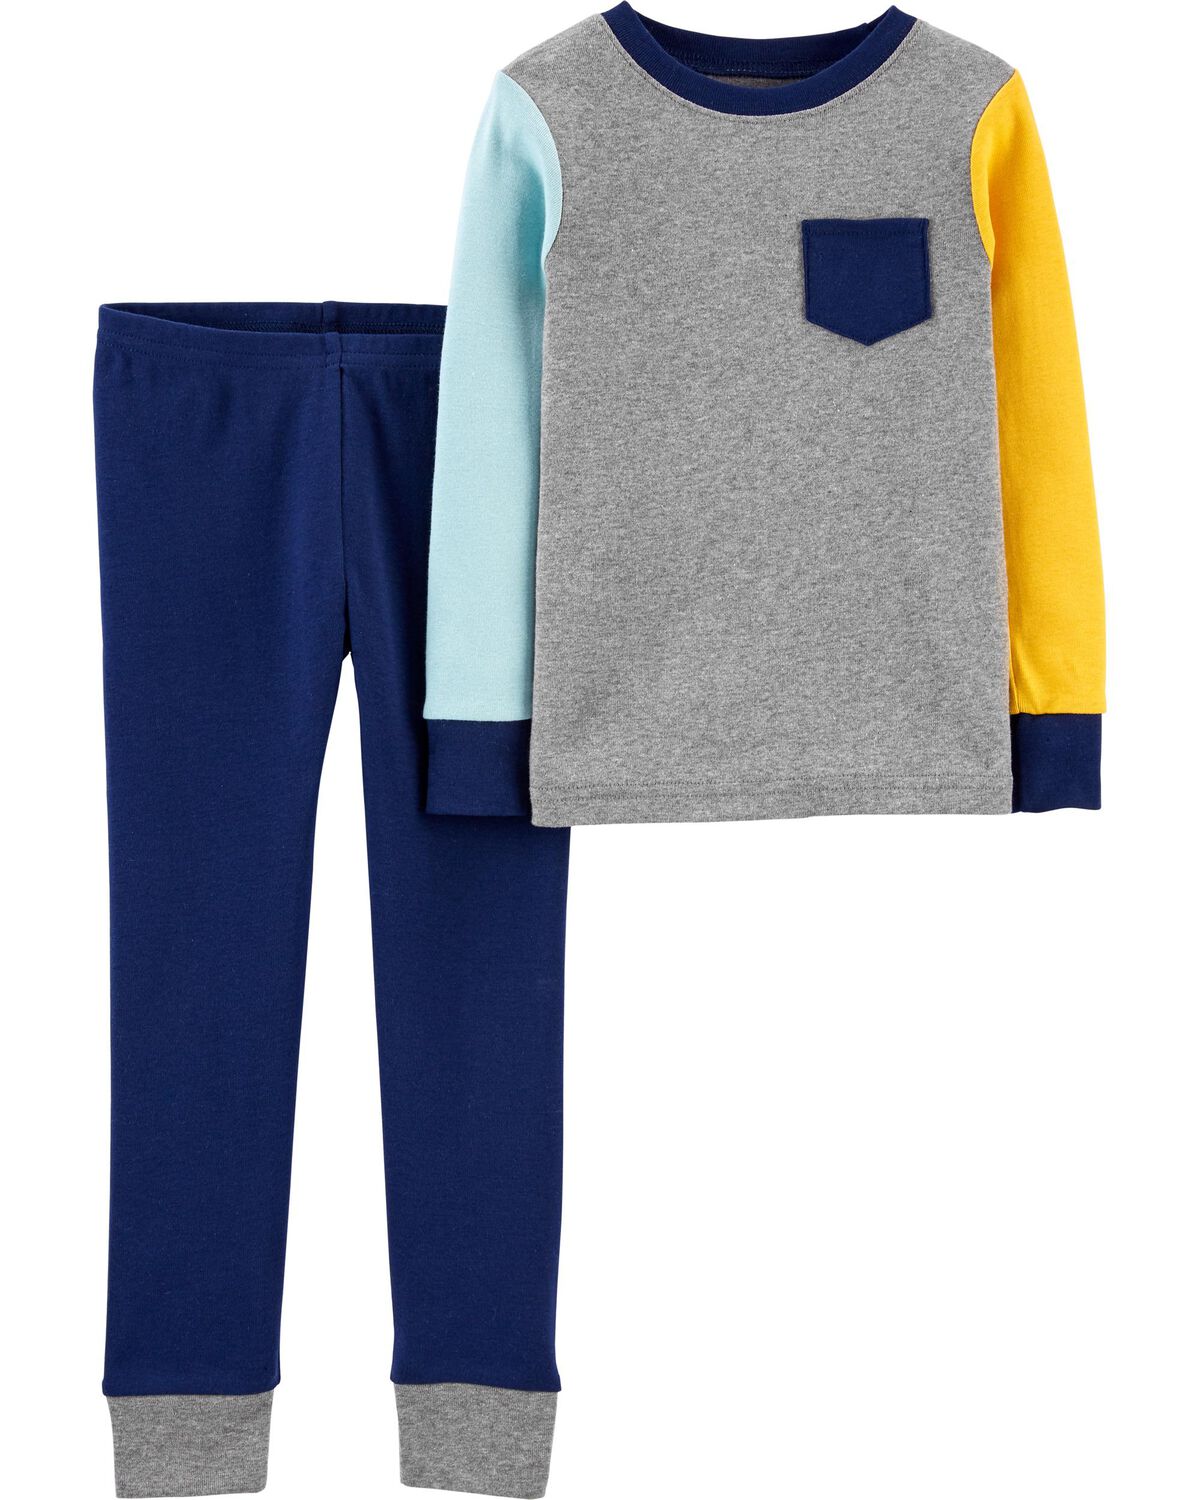 Kid 2-Piece Colorblock 100% Snug Fit Cotton Pajamas